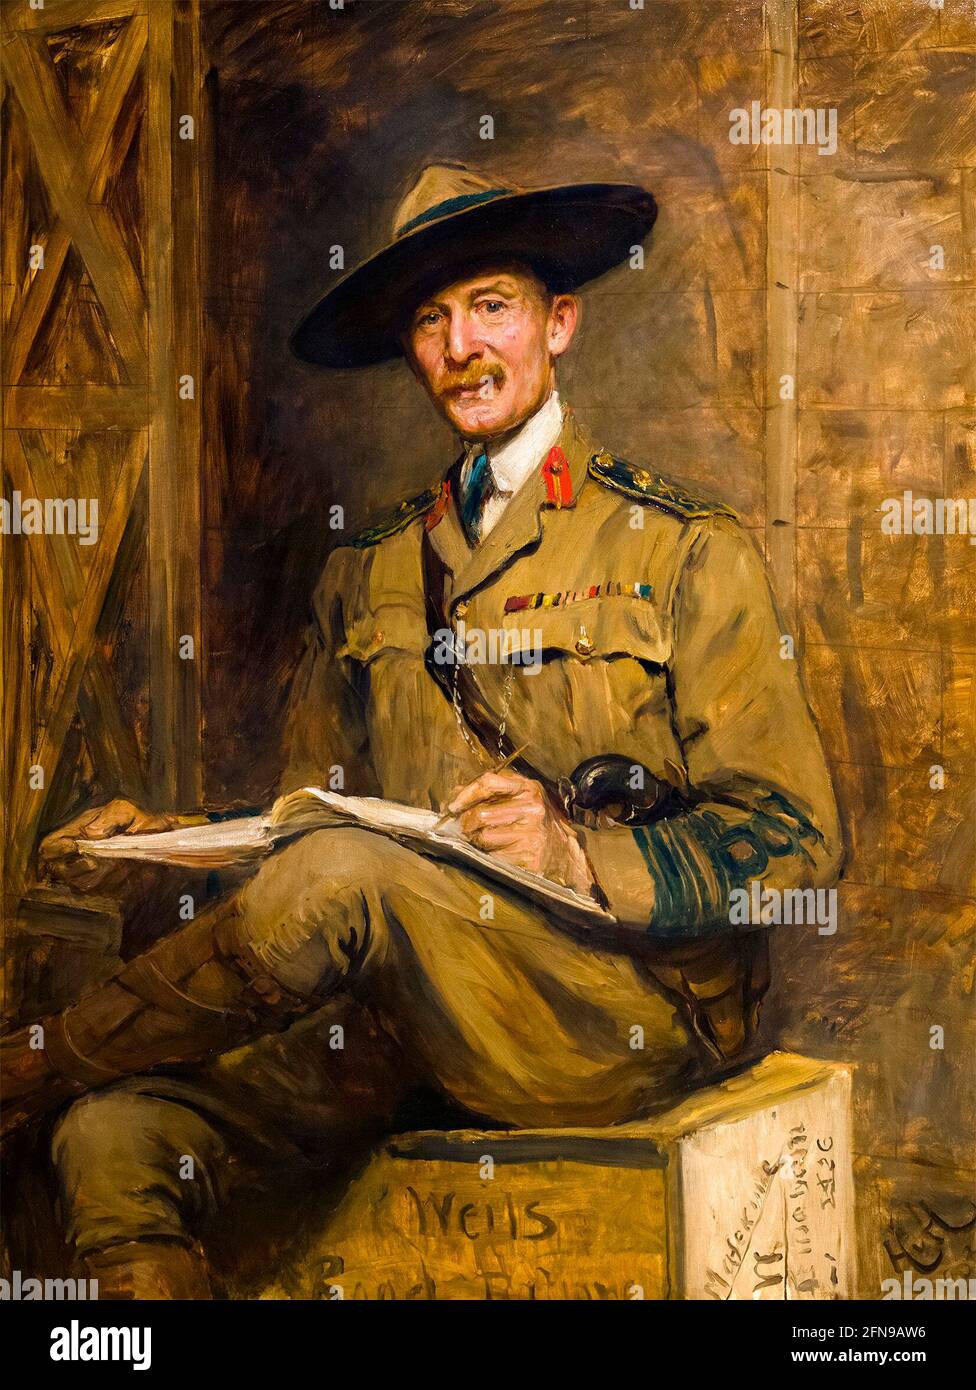 Robert Baden-Powell. Porträt des Gründers der Pfadfinderbewegung, Generalleutnant Robert Stephenson Smyth Baden-Powell, 1. Baron Baden-Powell, (1857-1941), von Sir Hubert von Herkomer, Öl auf Leinwand, 1903 Stockfoto